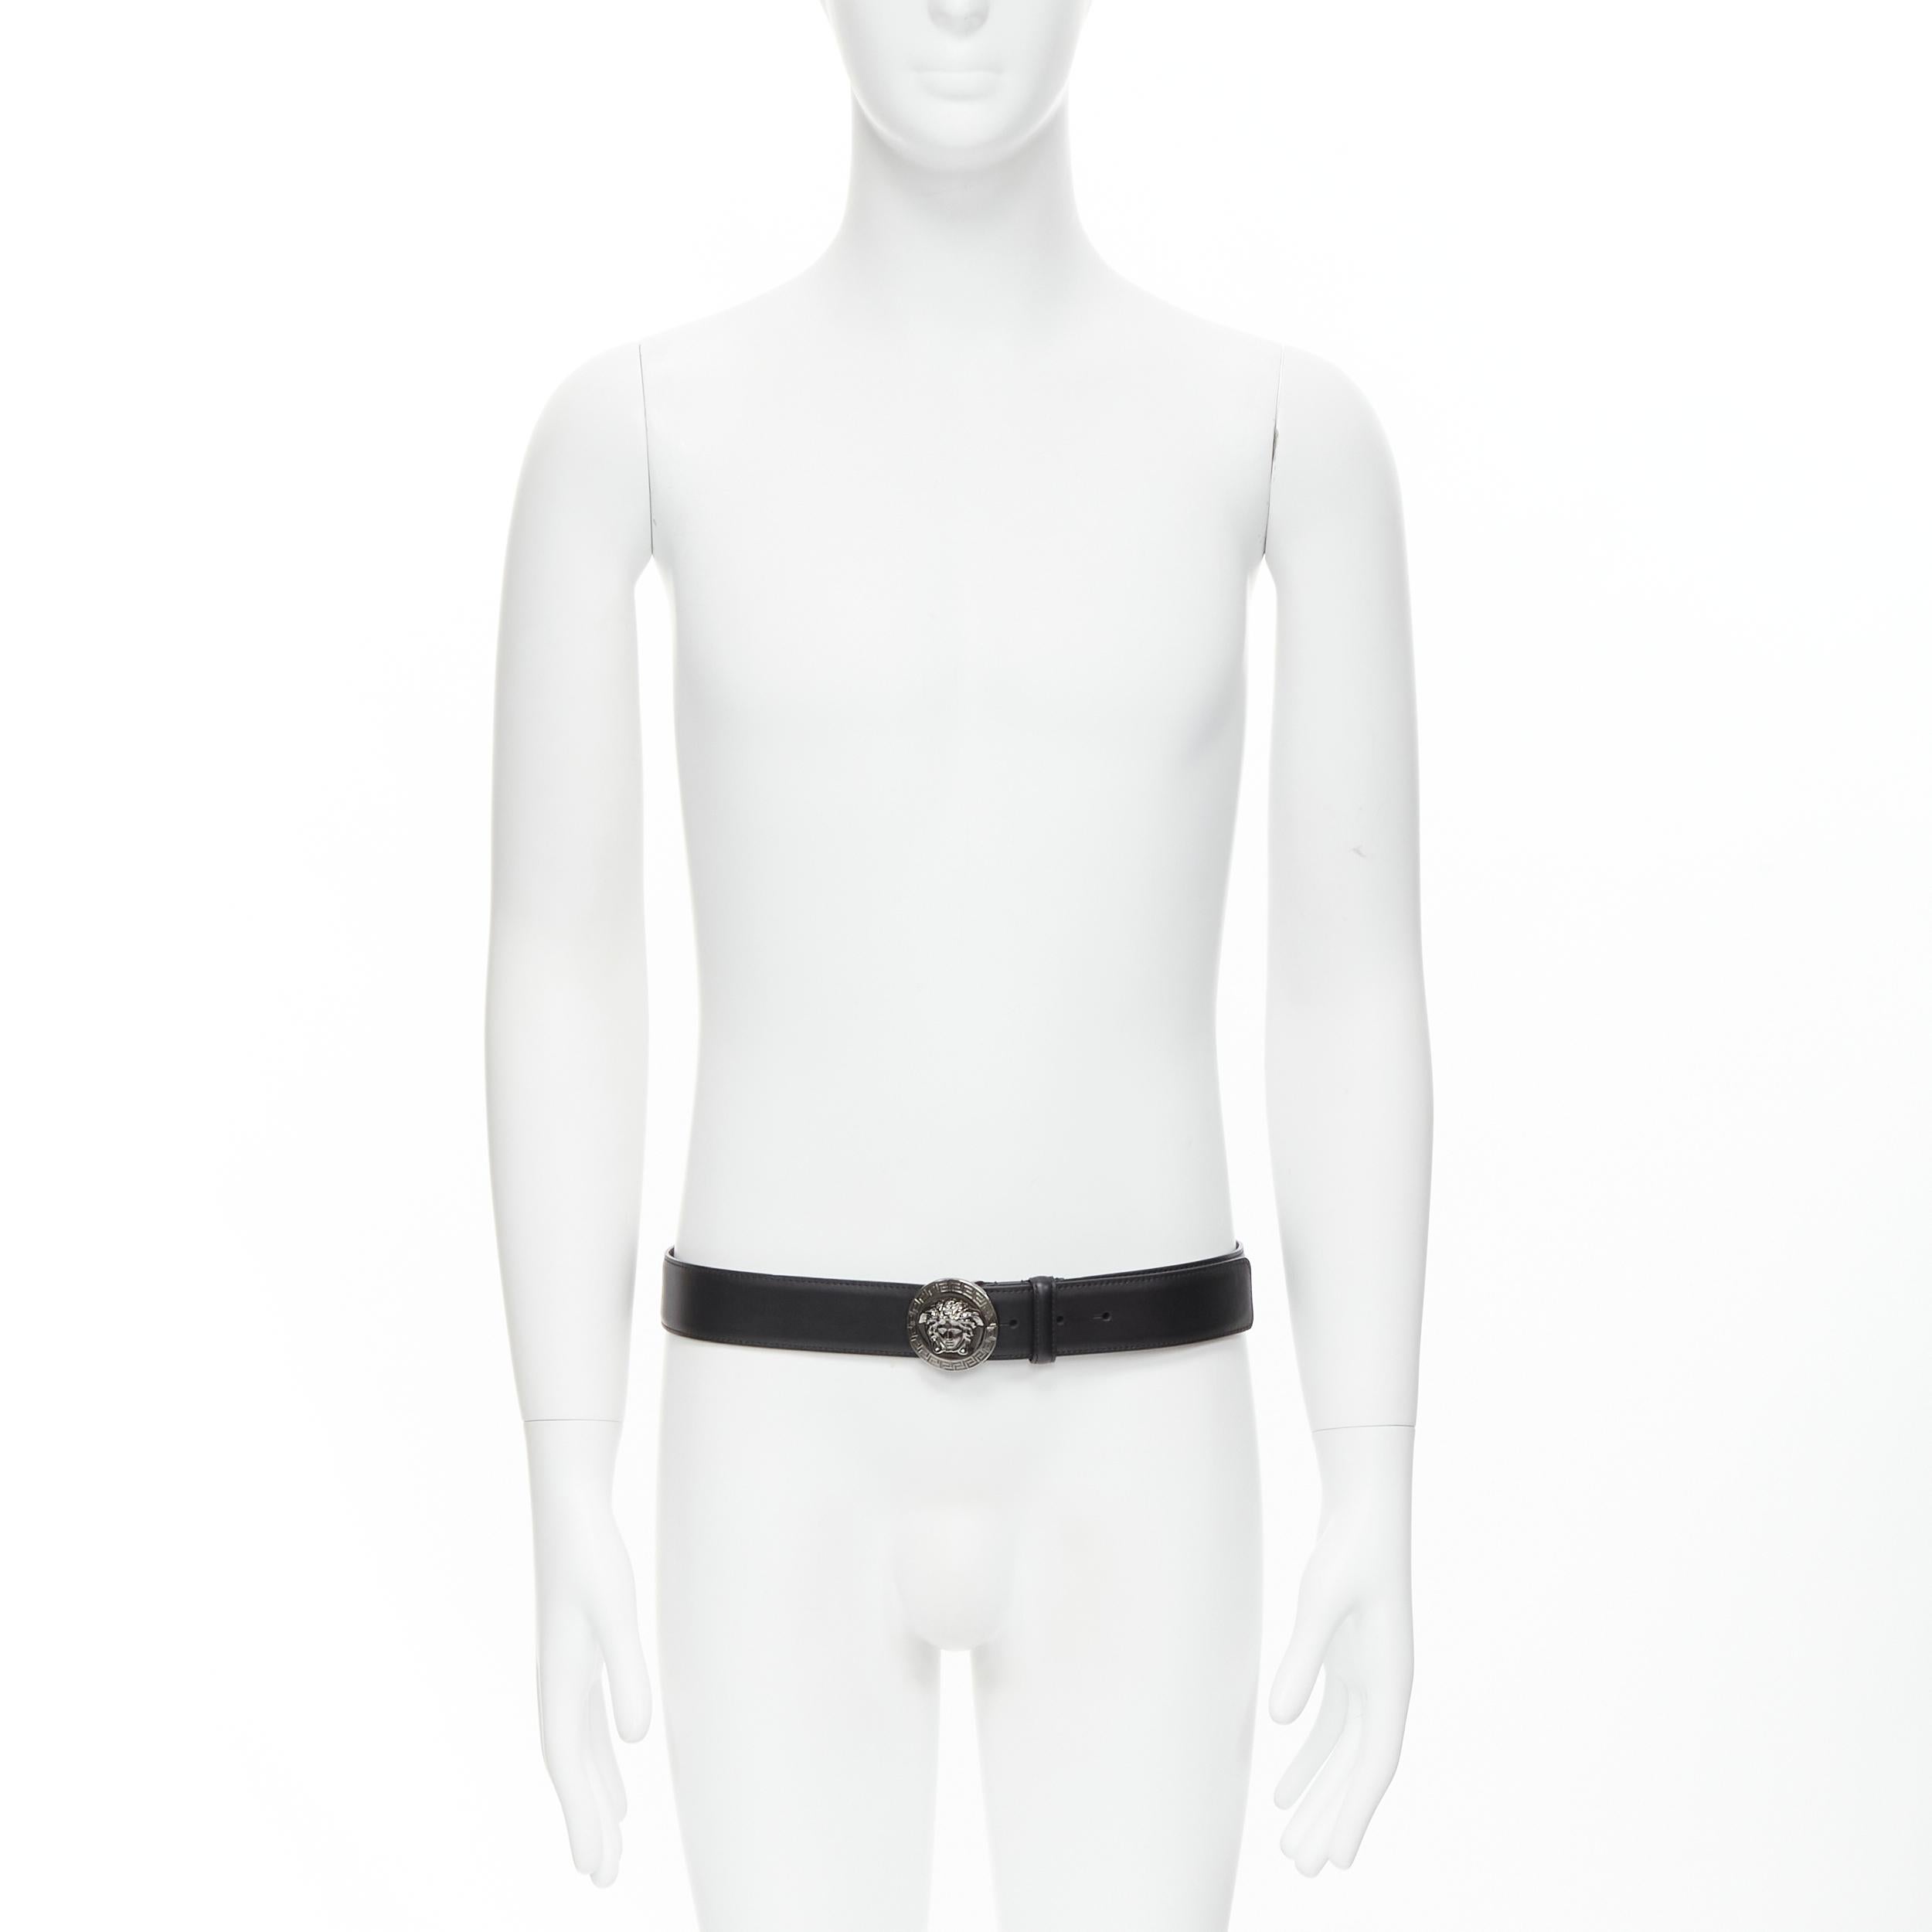 Noir Versace, ceinture noire Medusa Biggie à boucle médaillon argentée 110 cm, 44 po. en vente